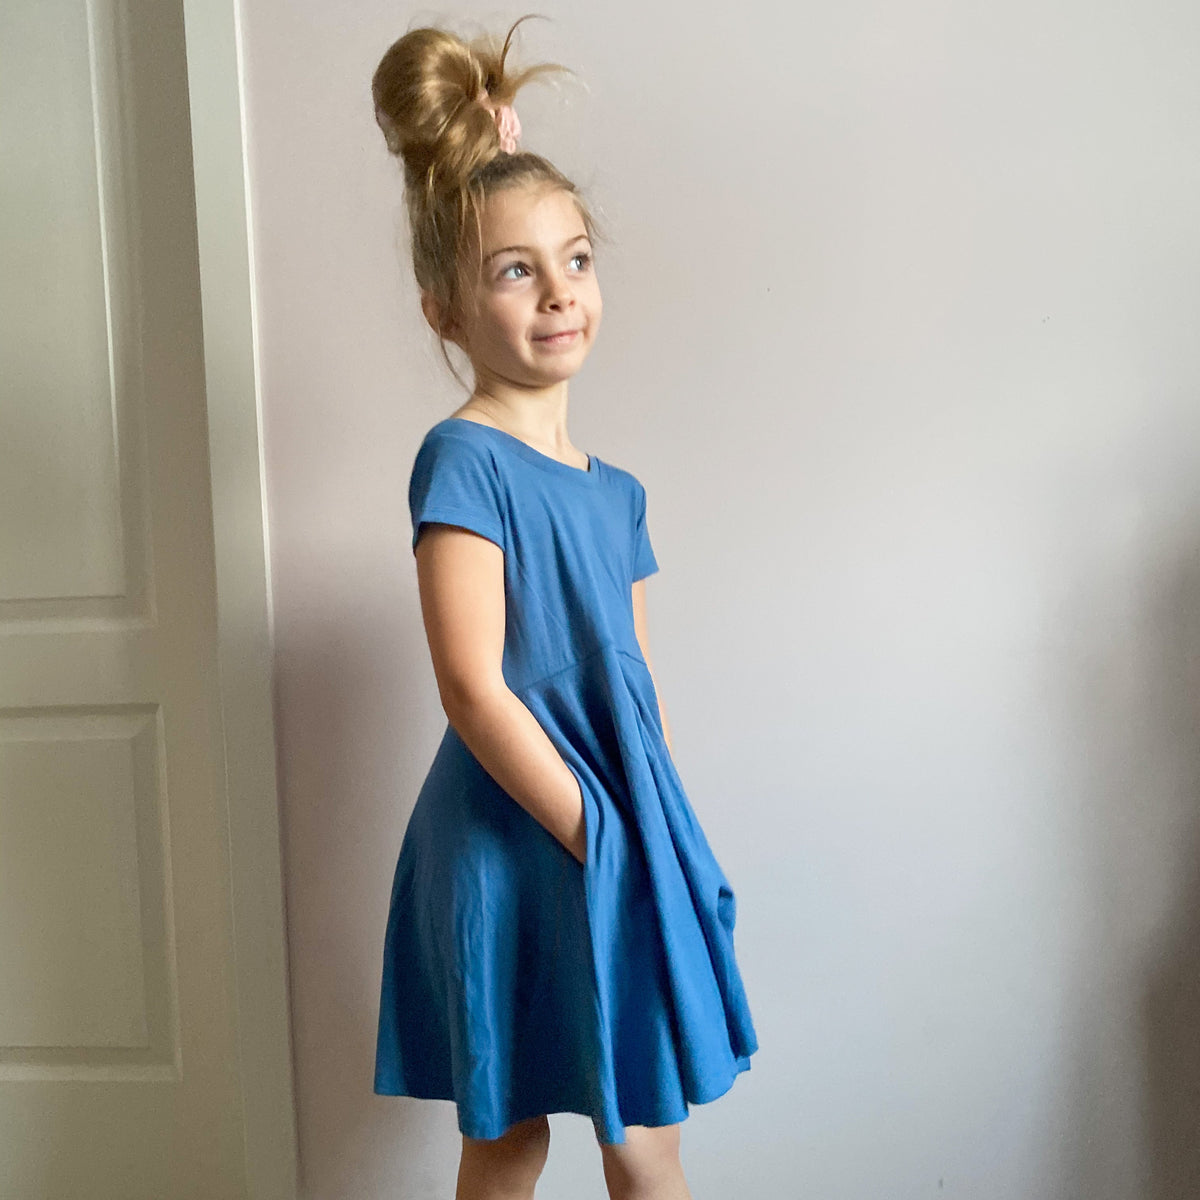 Elle Twirl Dress [Cap Sleeve] in 'Flutterdust' - Ready To Ship